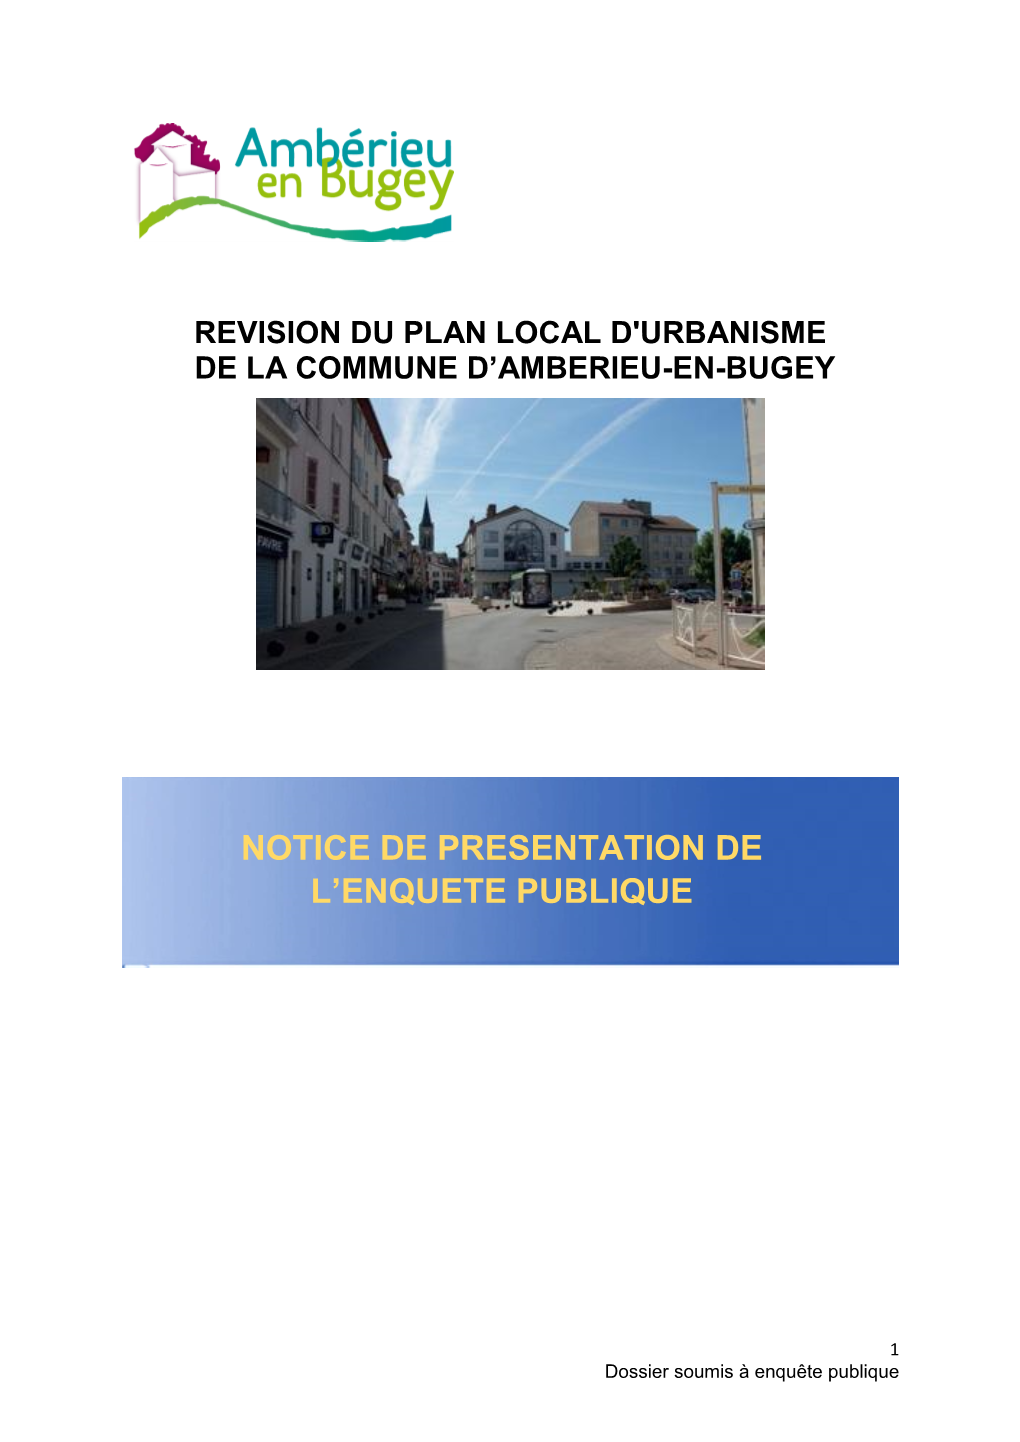 Notice De Presentation De L'enquete Publique